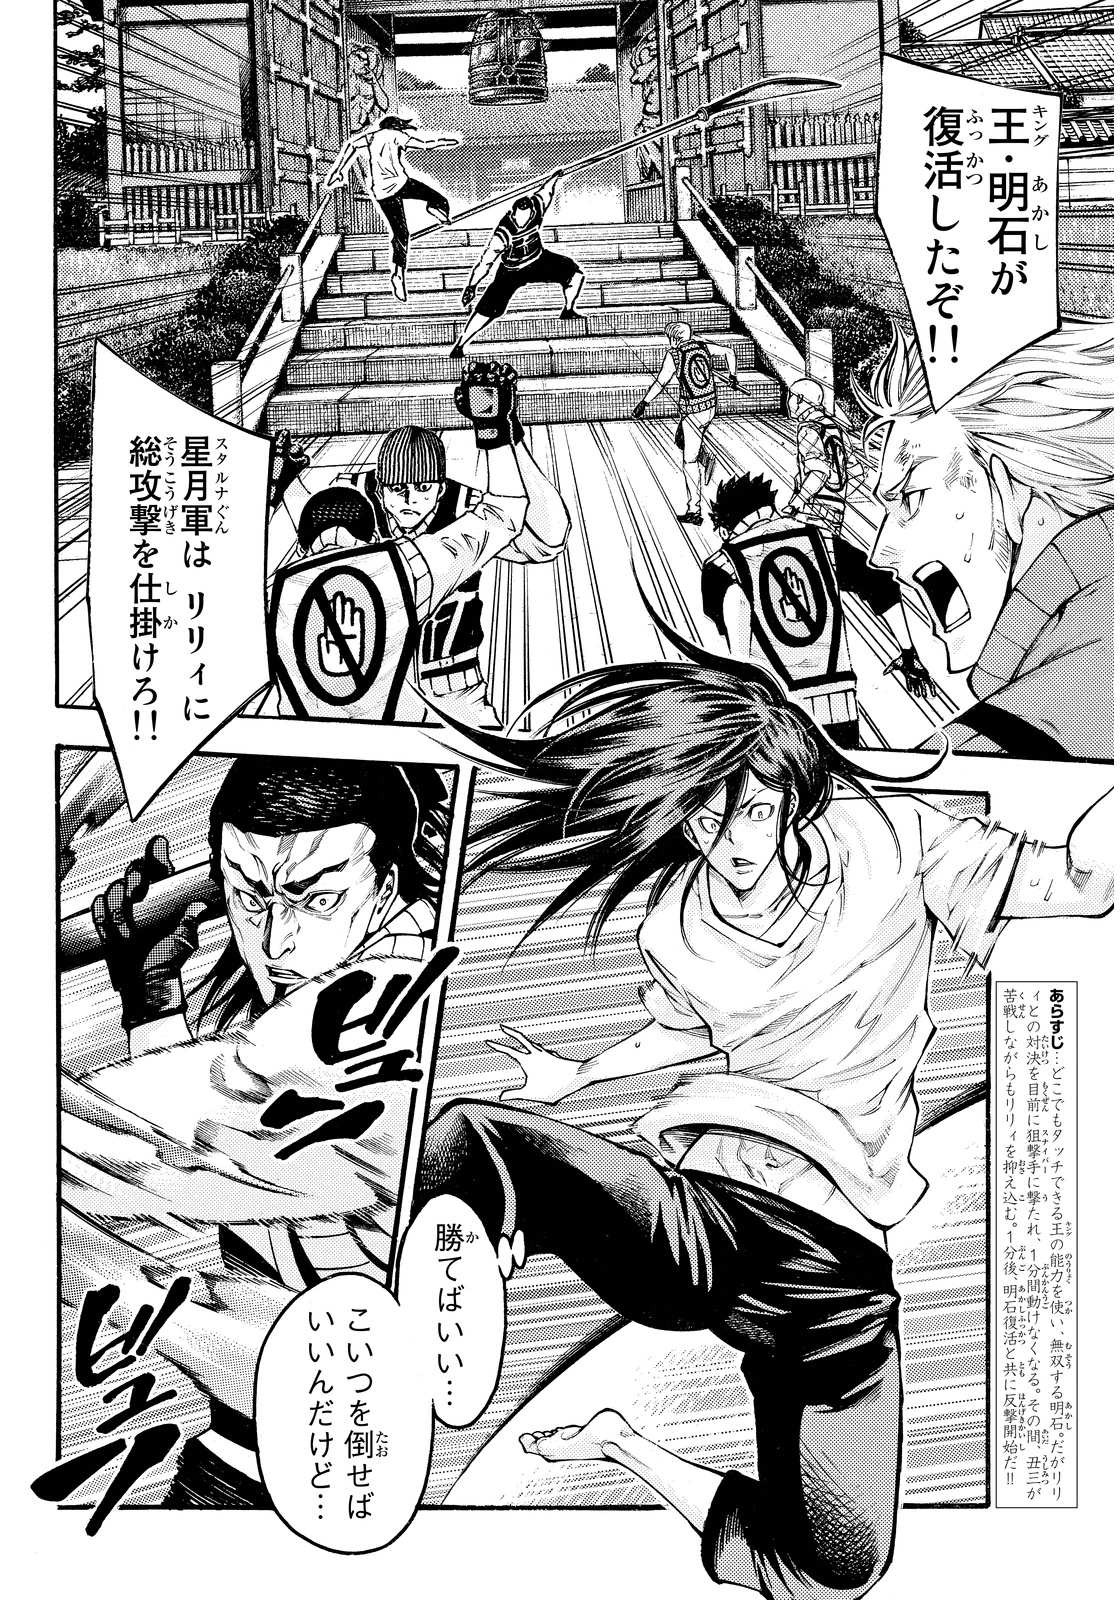 Kamisama no Ituori - Chapter 141 - Page 2